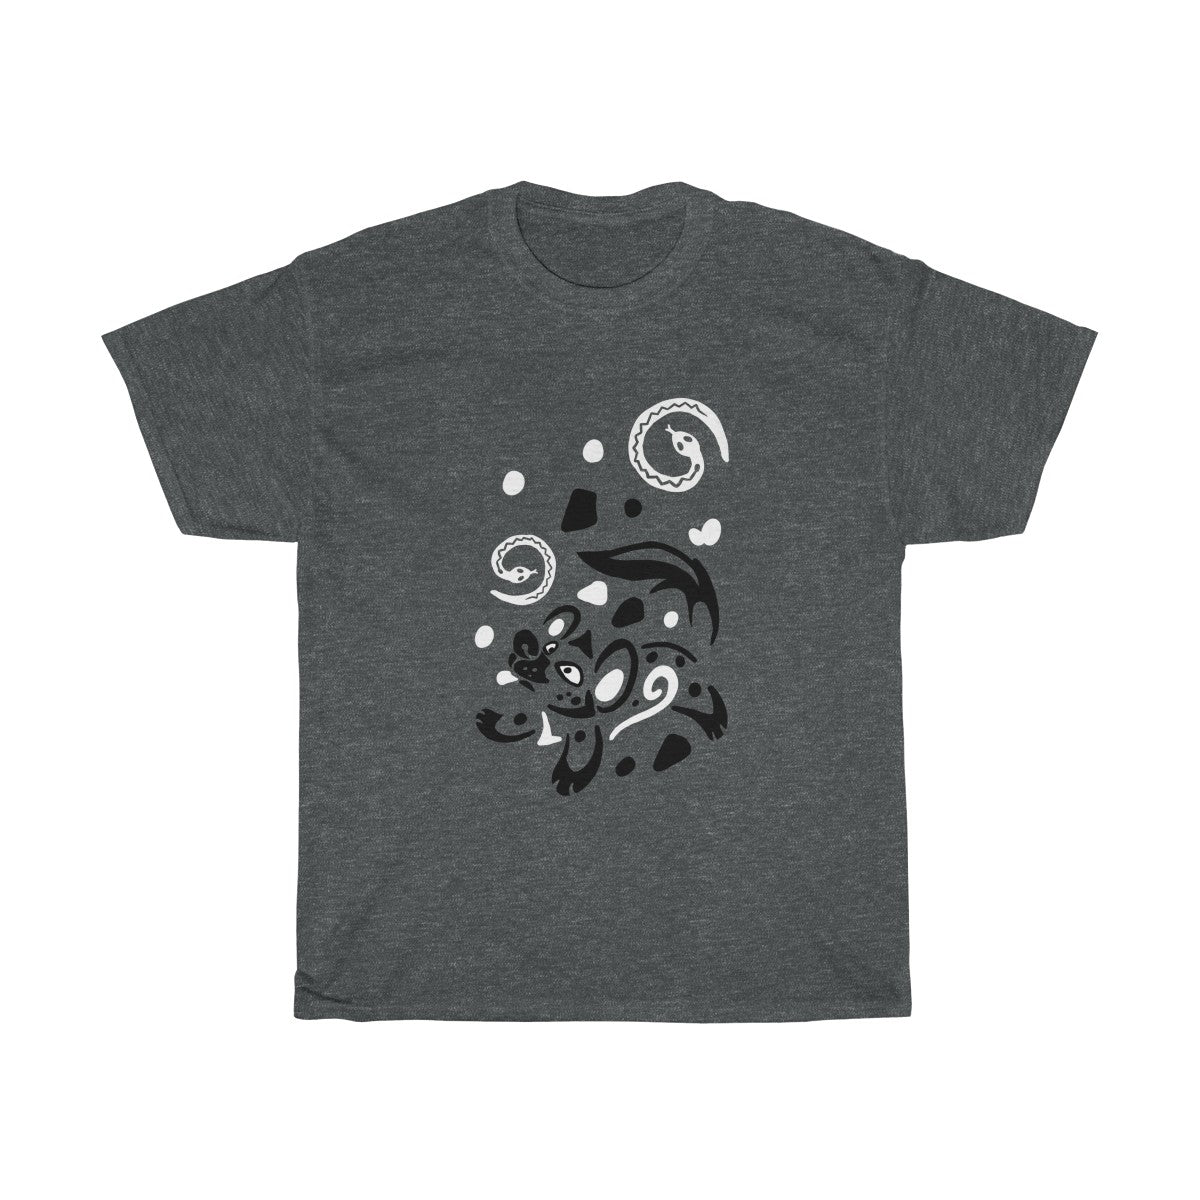 Yeens & Sneks - T-Shirts T-Shirt Dire Creatures Dark Heather S 